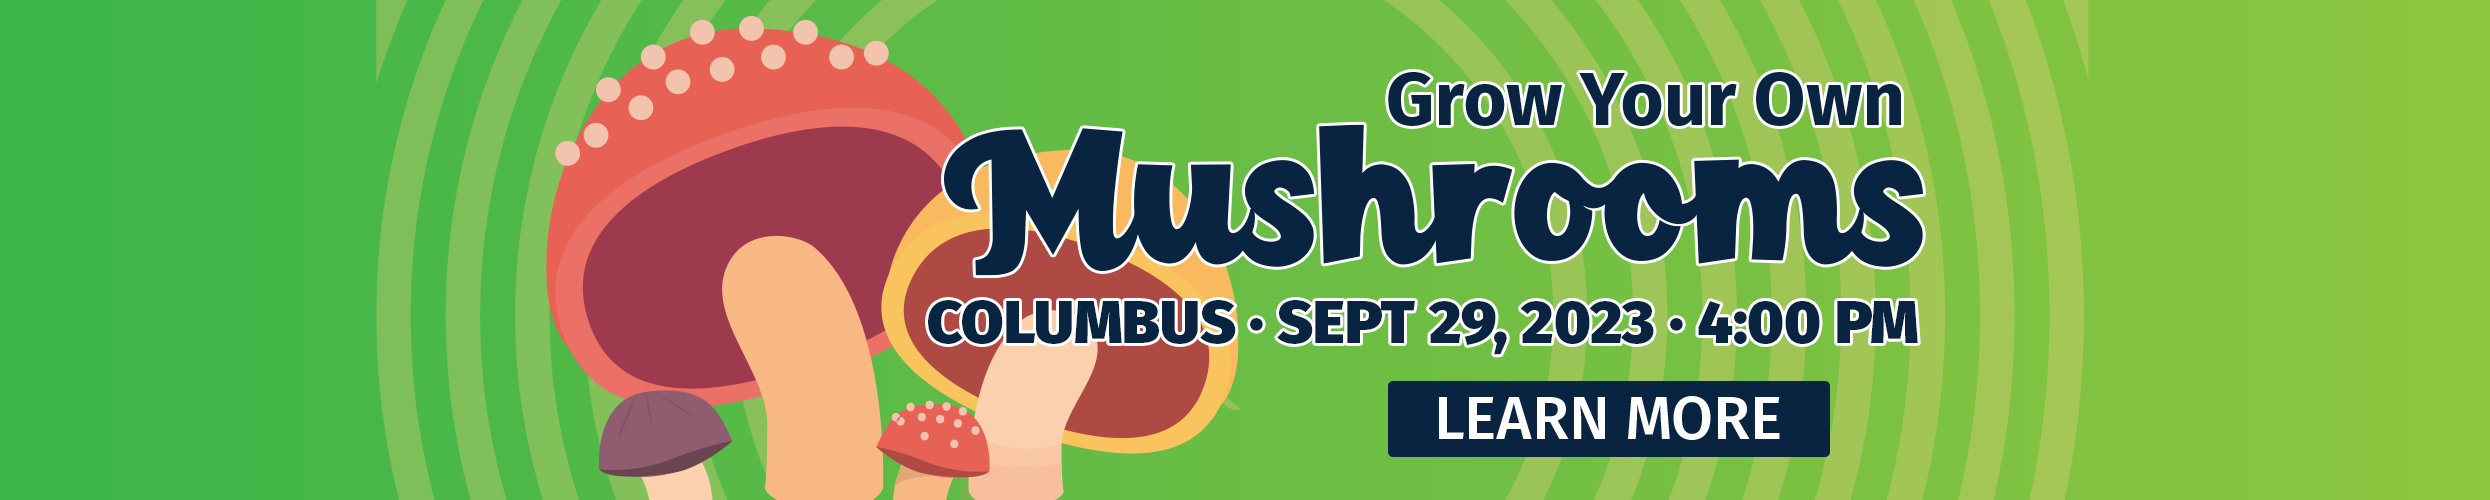 Grow Your Own Mushrooms - Columbus